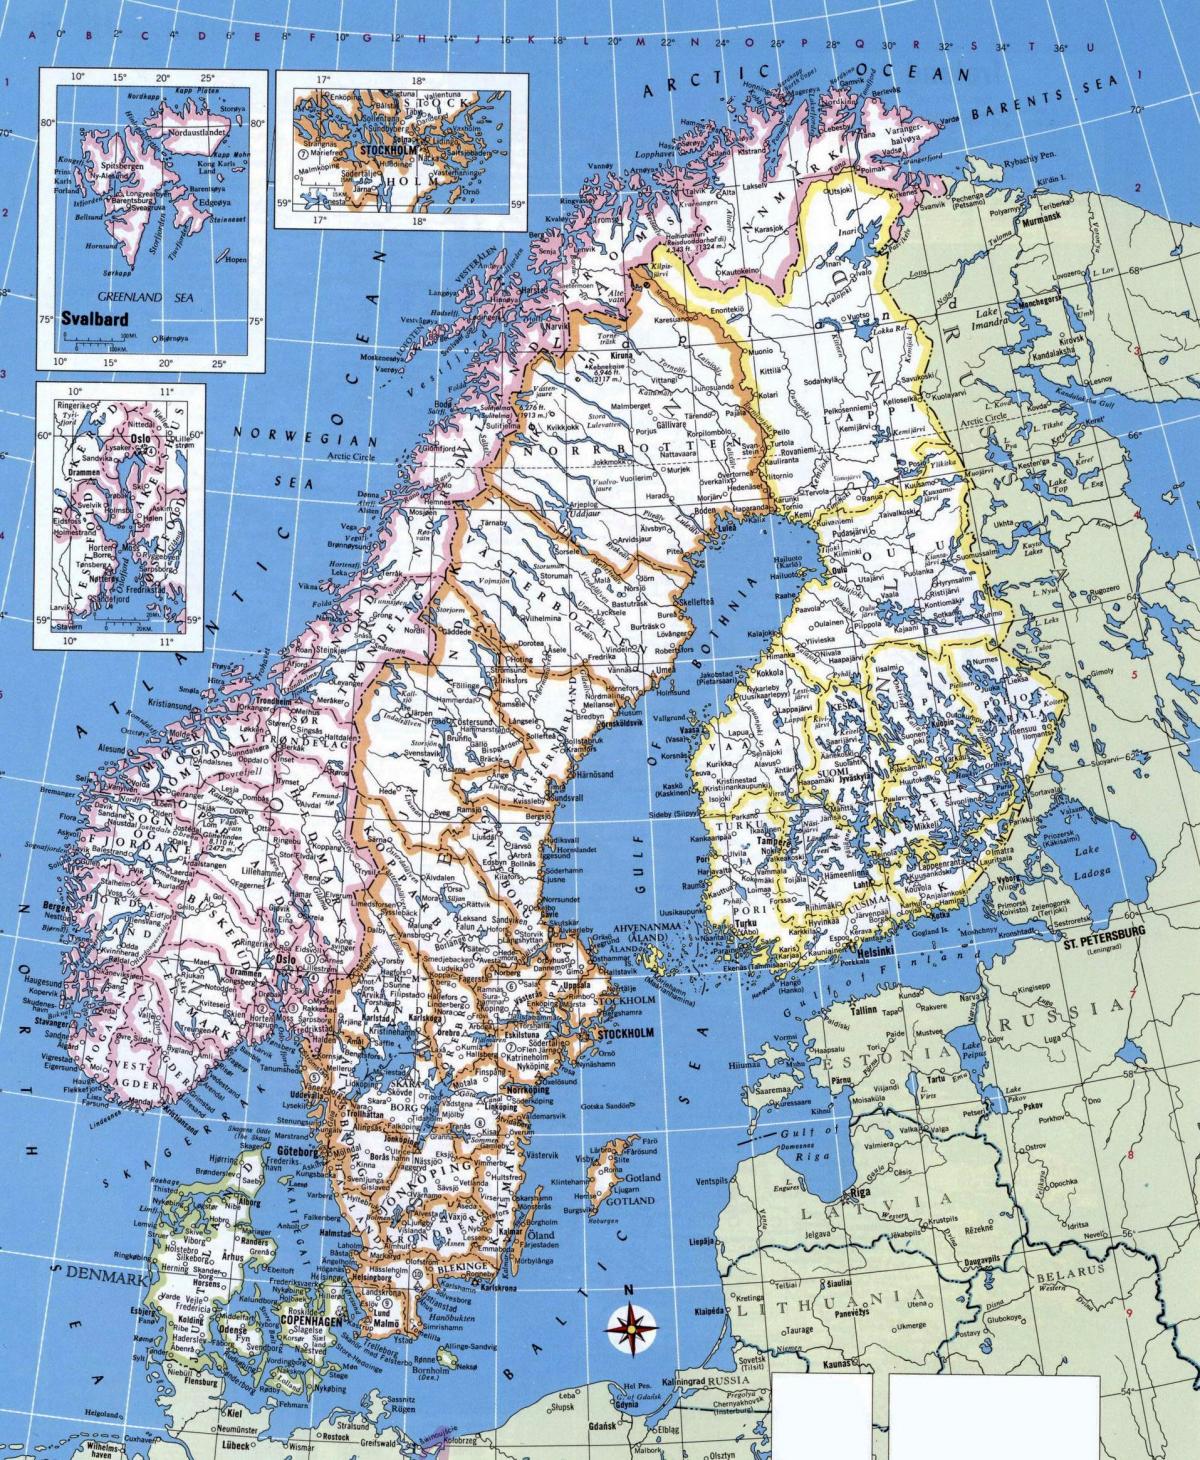 რუკა დეტალური ნორვეგია